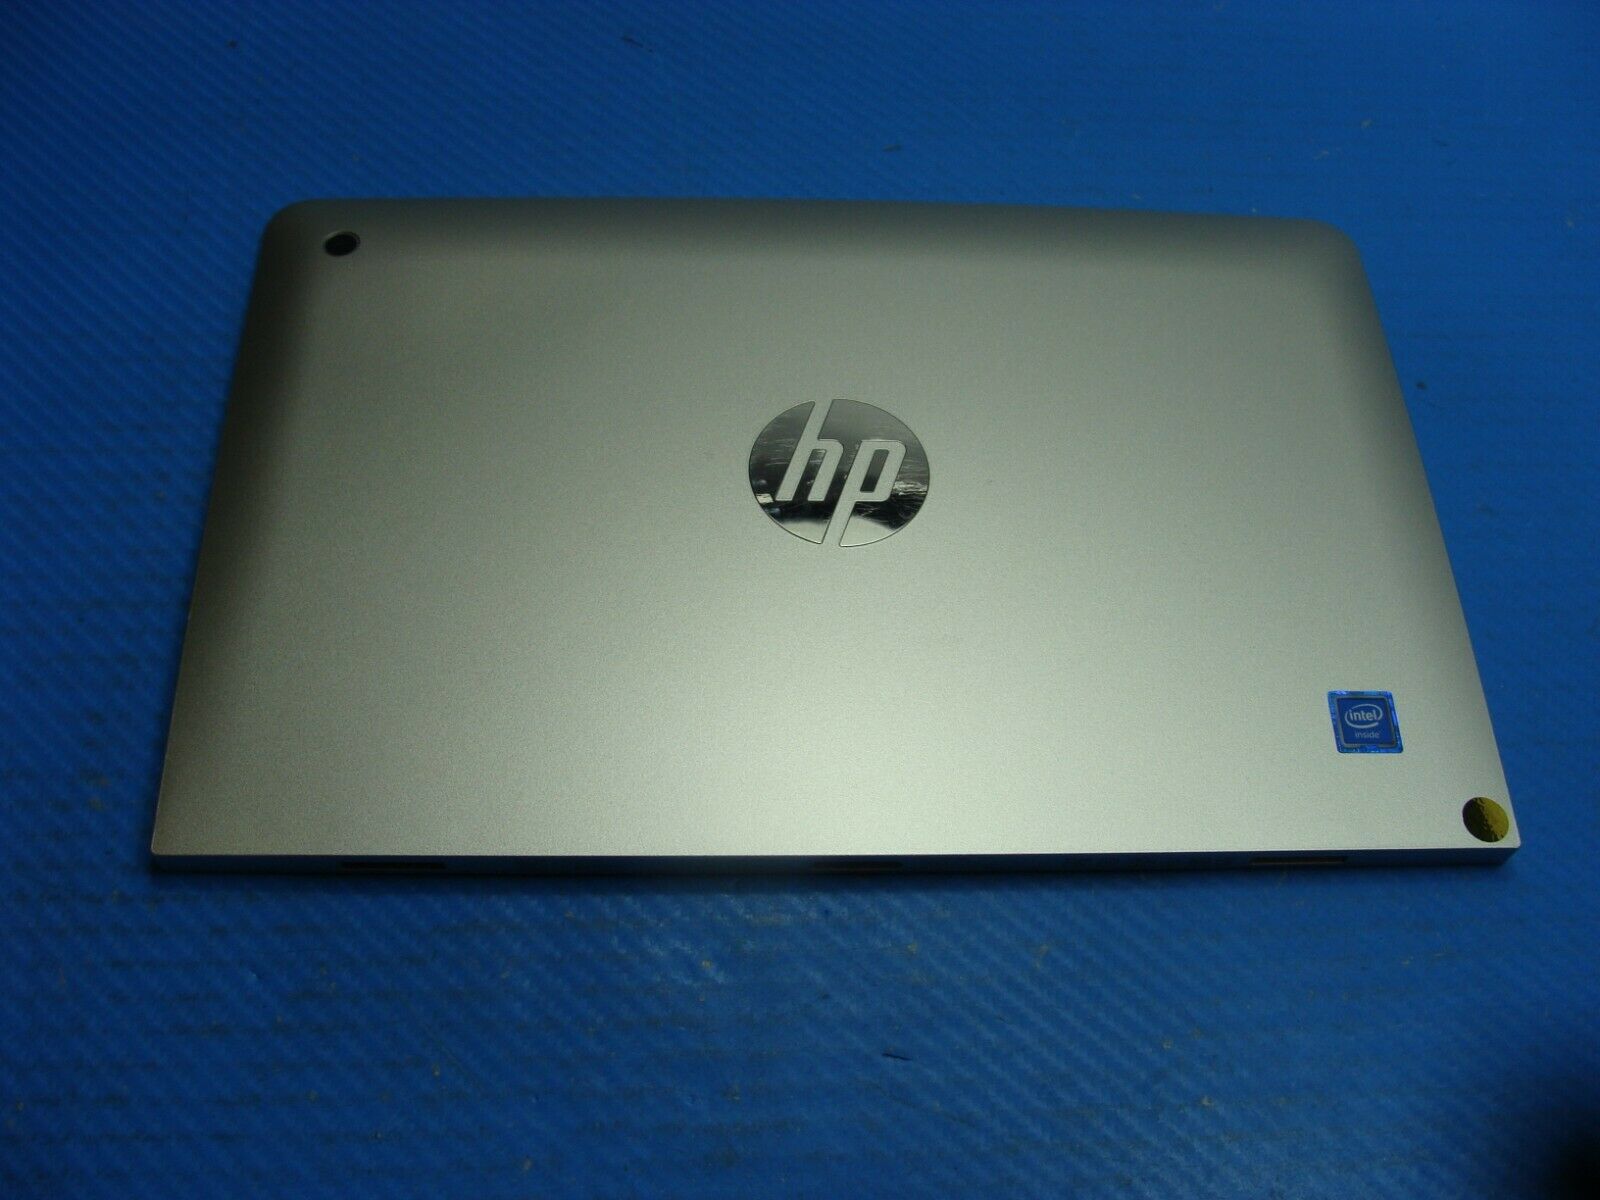 HP x2 Detachable 10-p010nr 10.1